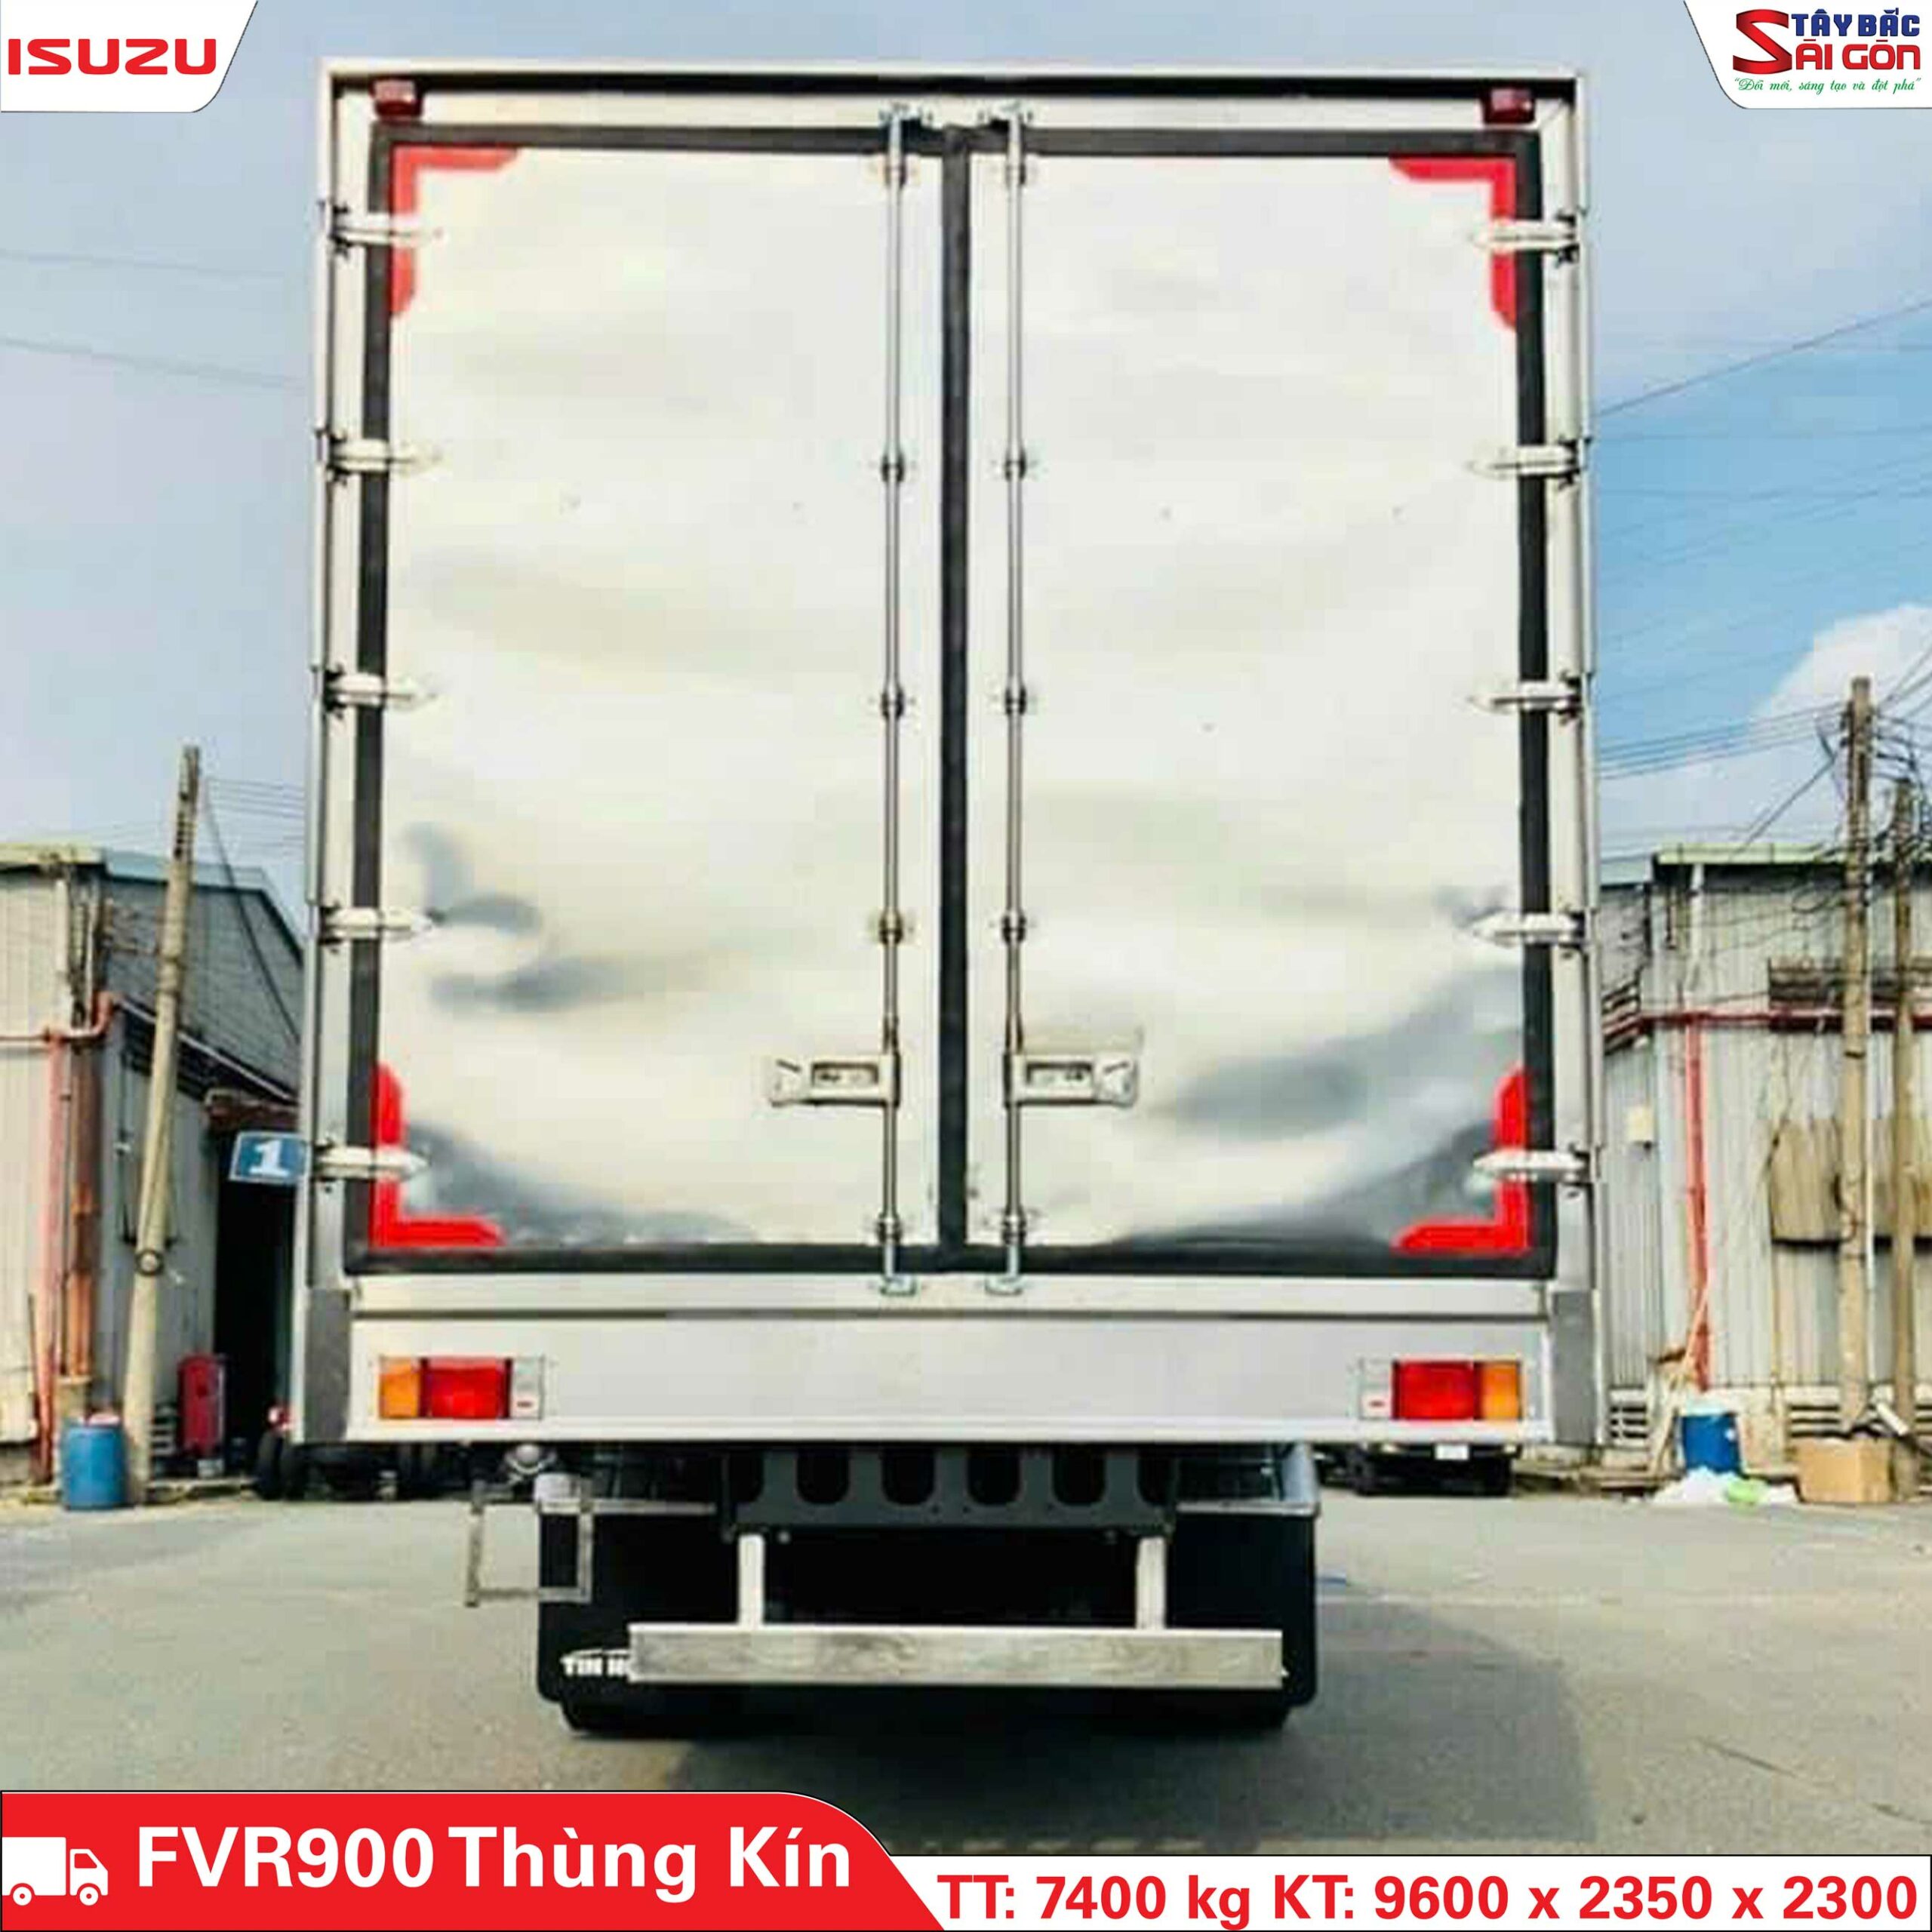 Xe Tải Isuzu FVR900 7.4 Tấn Thùng Kín